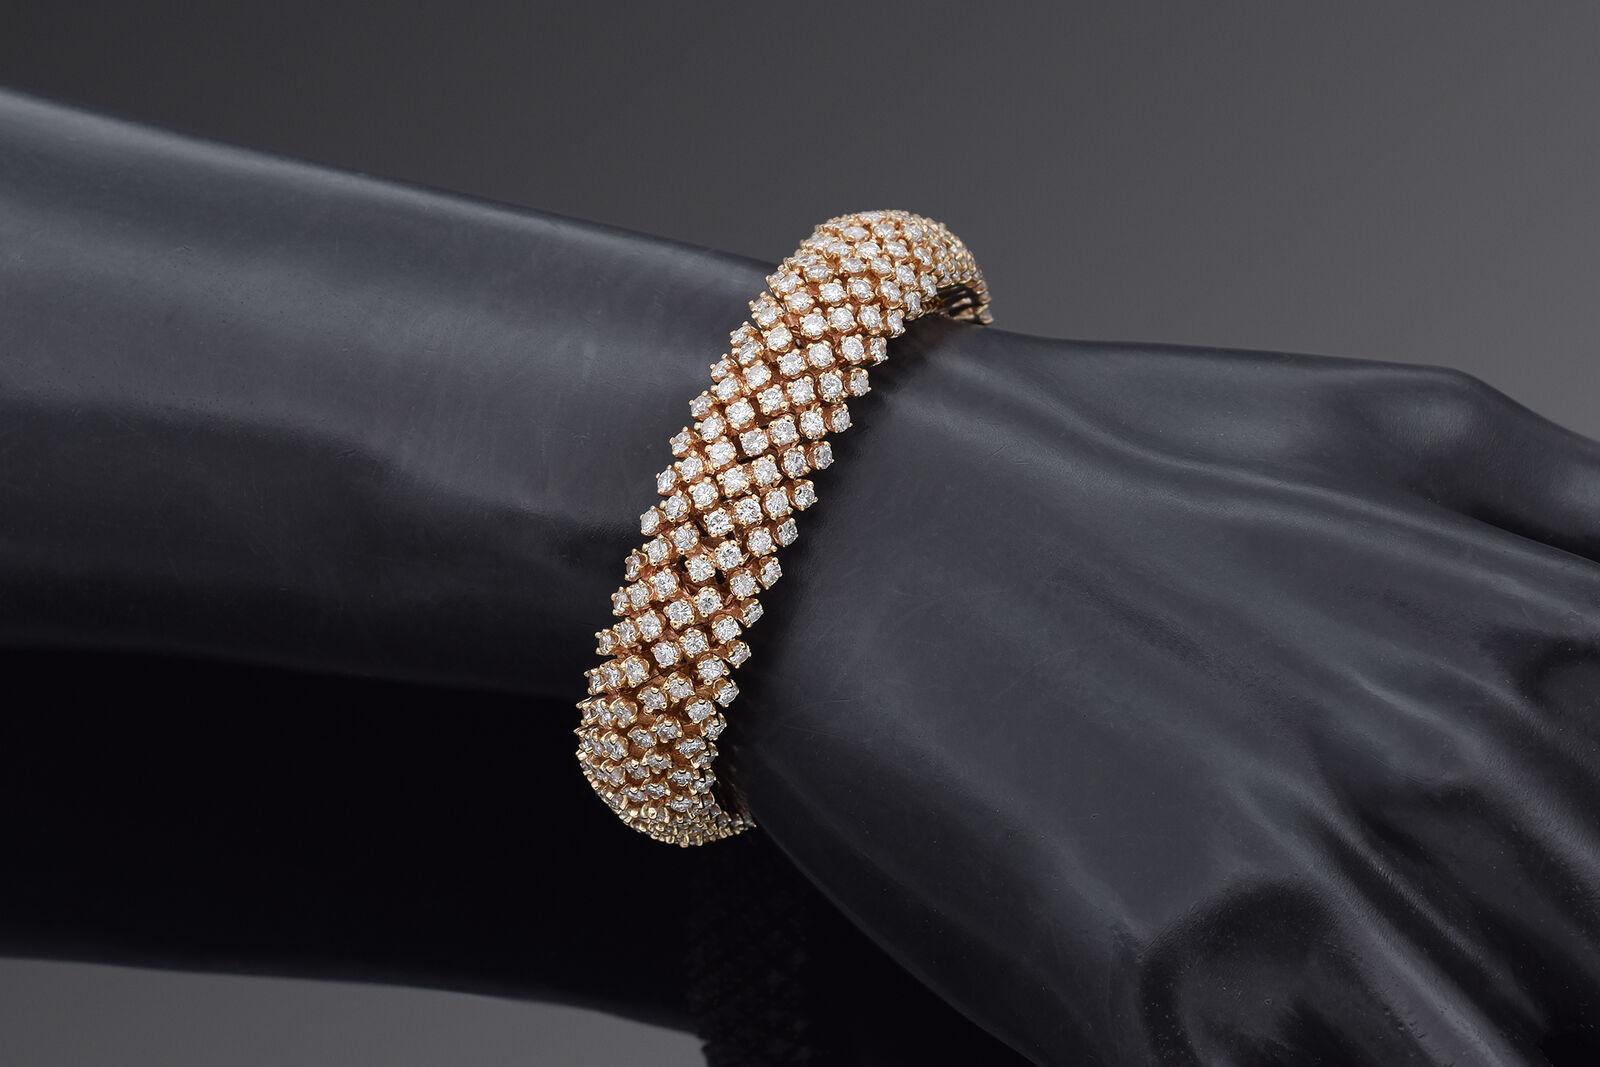 Magnifique bracelet en or jaune 14K avec 315 diamants pesant 0,03ct chacun, pour un poids total de 9,45 carats. Le bracelet pèse 57 grammes et mesure 13,7 mm de large. La longueur du bracelet est de 5,75 pouces. Le bracelet est estampillé 14K.